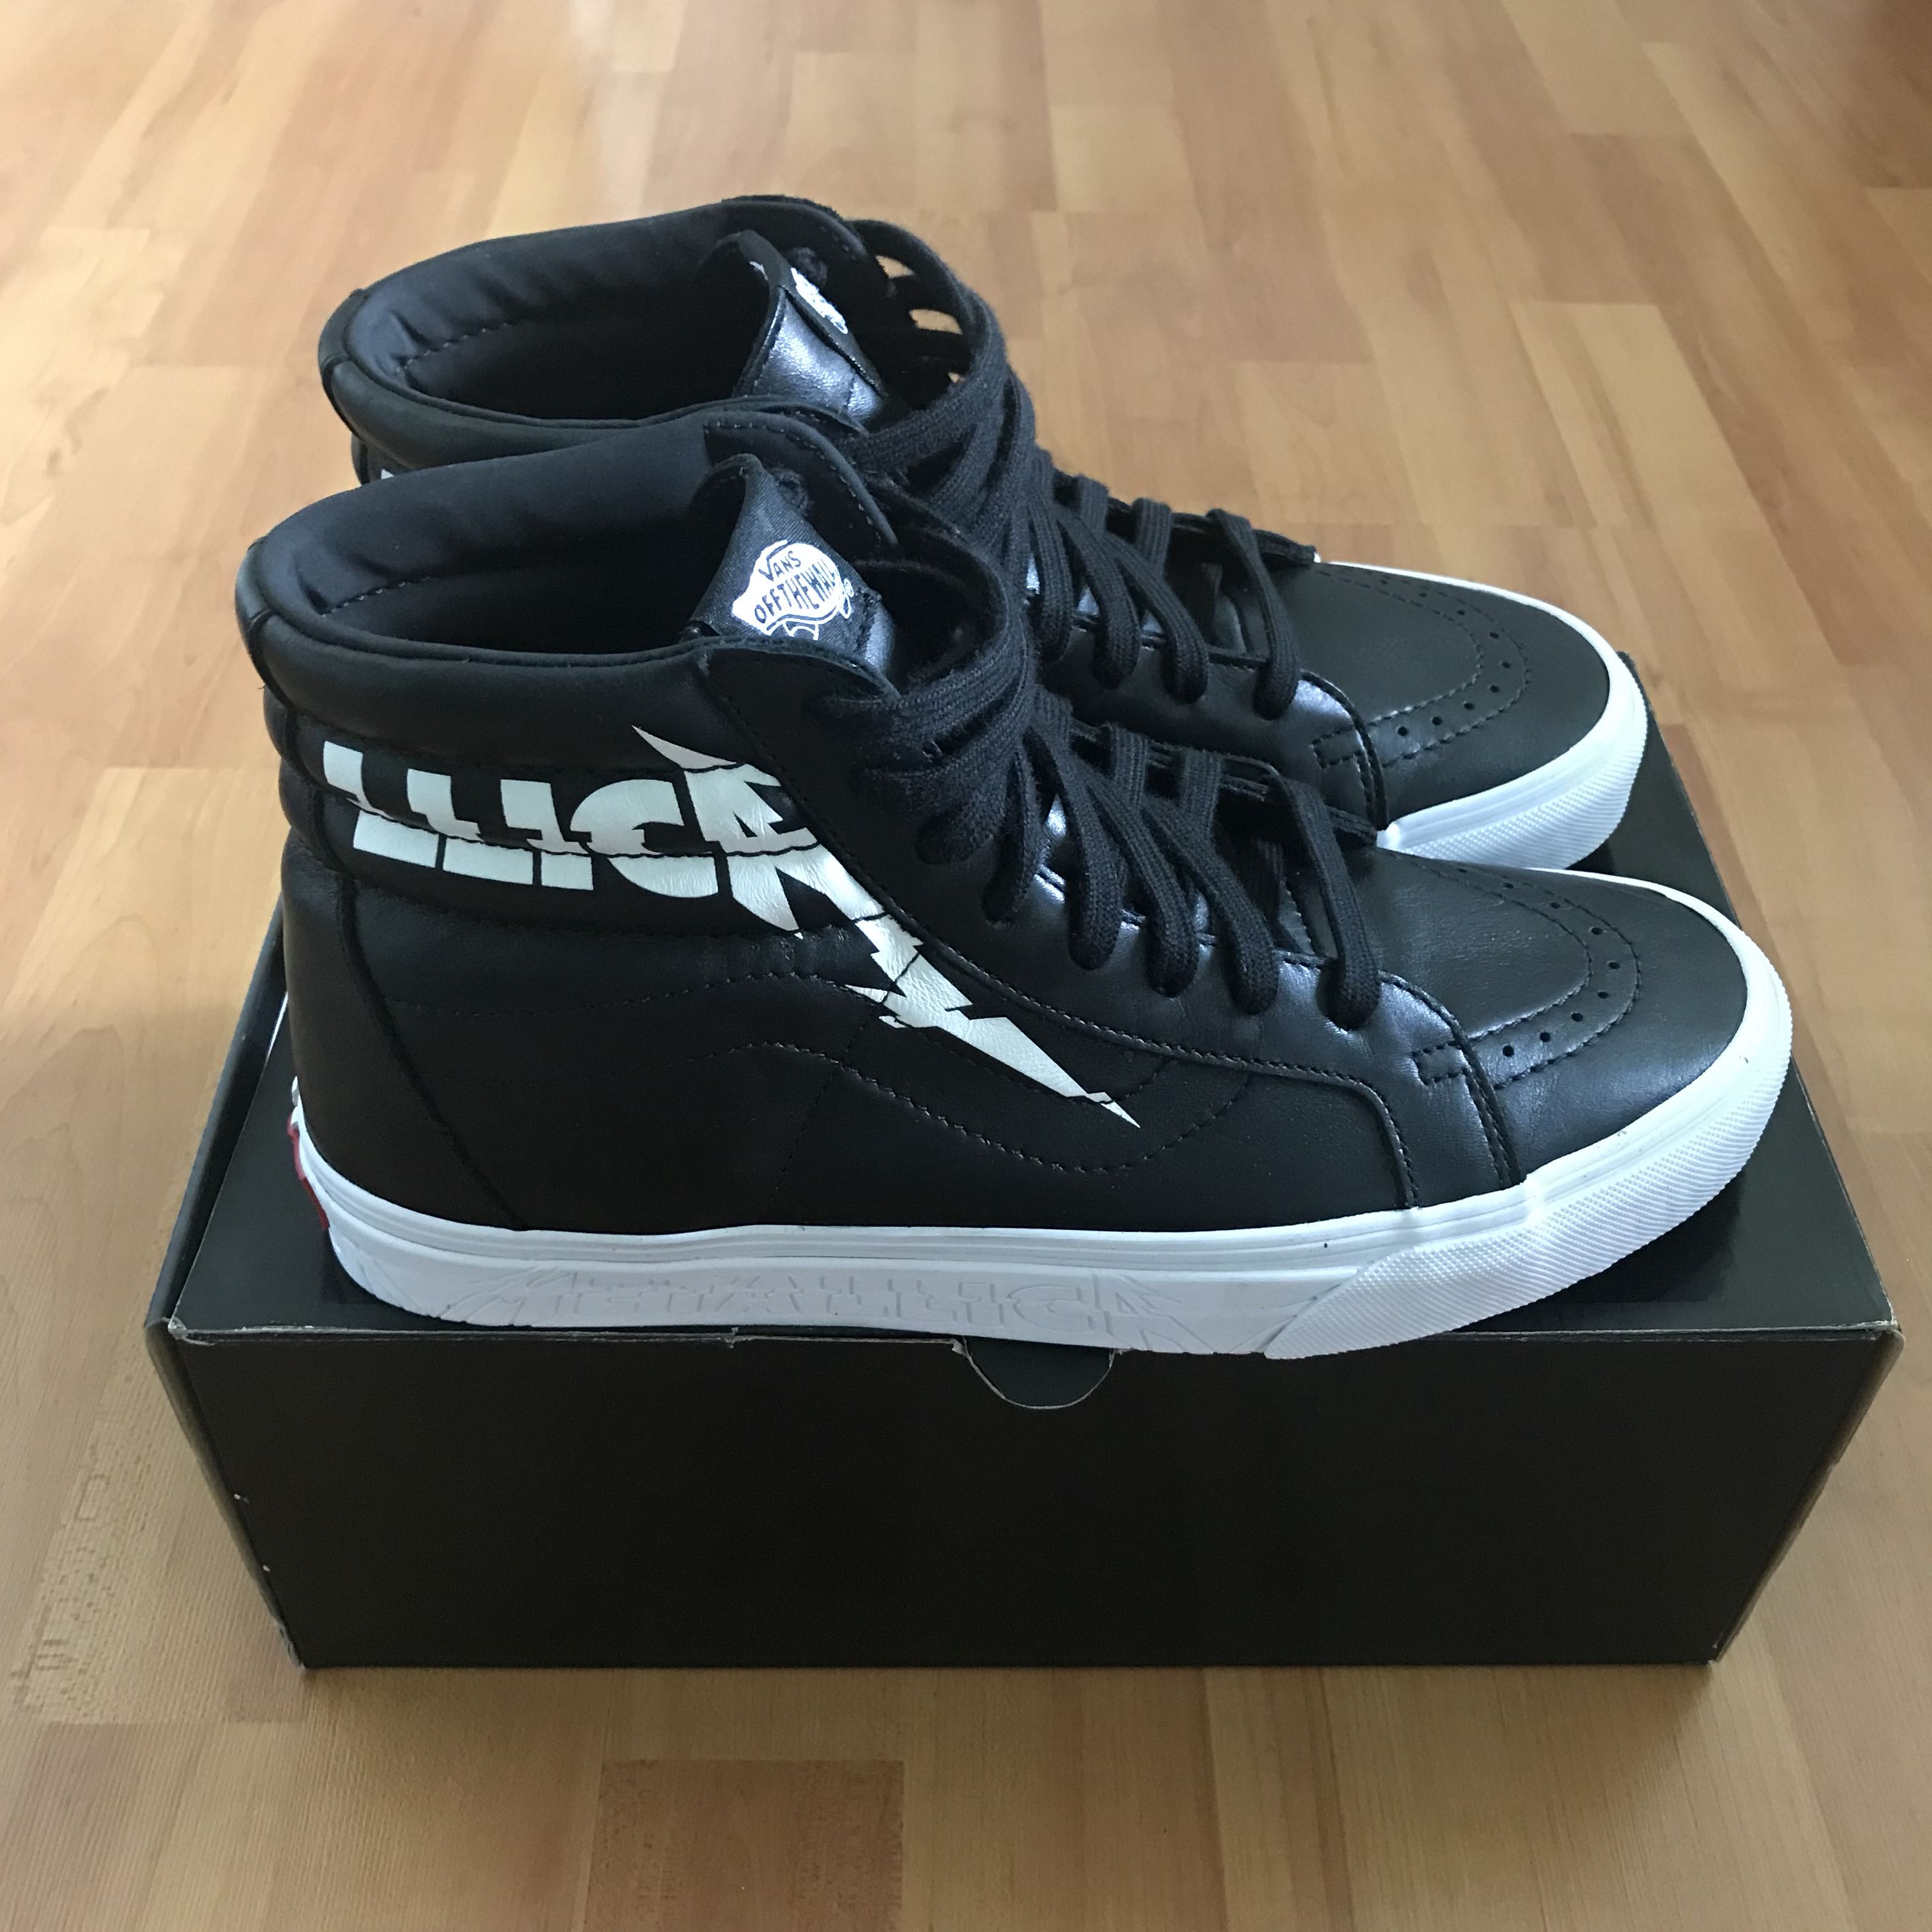 Vans Metallica SK8-Hi Black leather sneakers US8/UK7/EUR40.5 New!!, Men's  Fashion, Footwear on Carousell